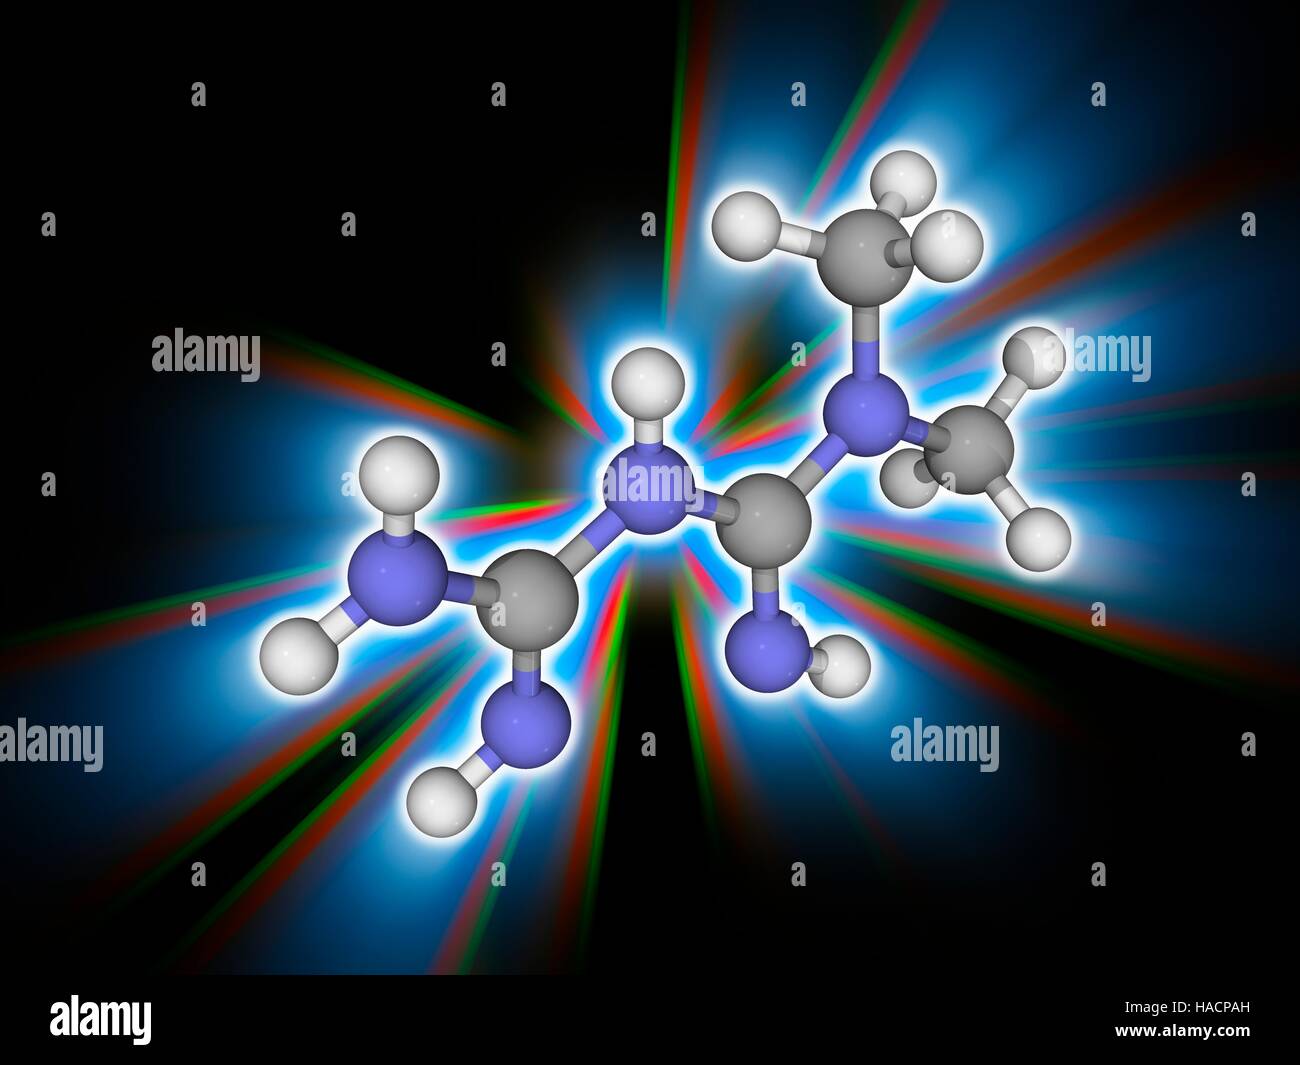 La metformina. Il modello molecolare del farmaco metformina (C4.H11.N5), che viene usata per curare il diabete di tipo-2 in sovrappeso e pazienti obesi e quelli con funzionalità renale normale. Gli atomi sono rappresentati da sfere e sono codificati a colori: carbonio (grigio) e idrogeno (bianco). Illustrazione. Foto Stock